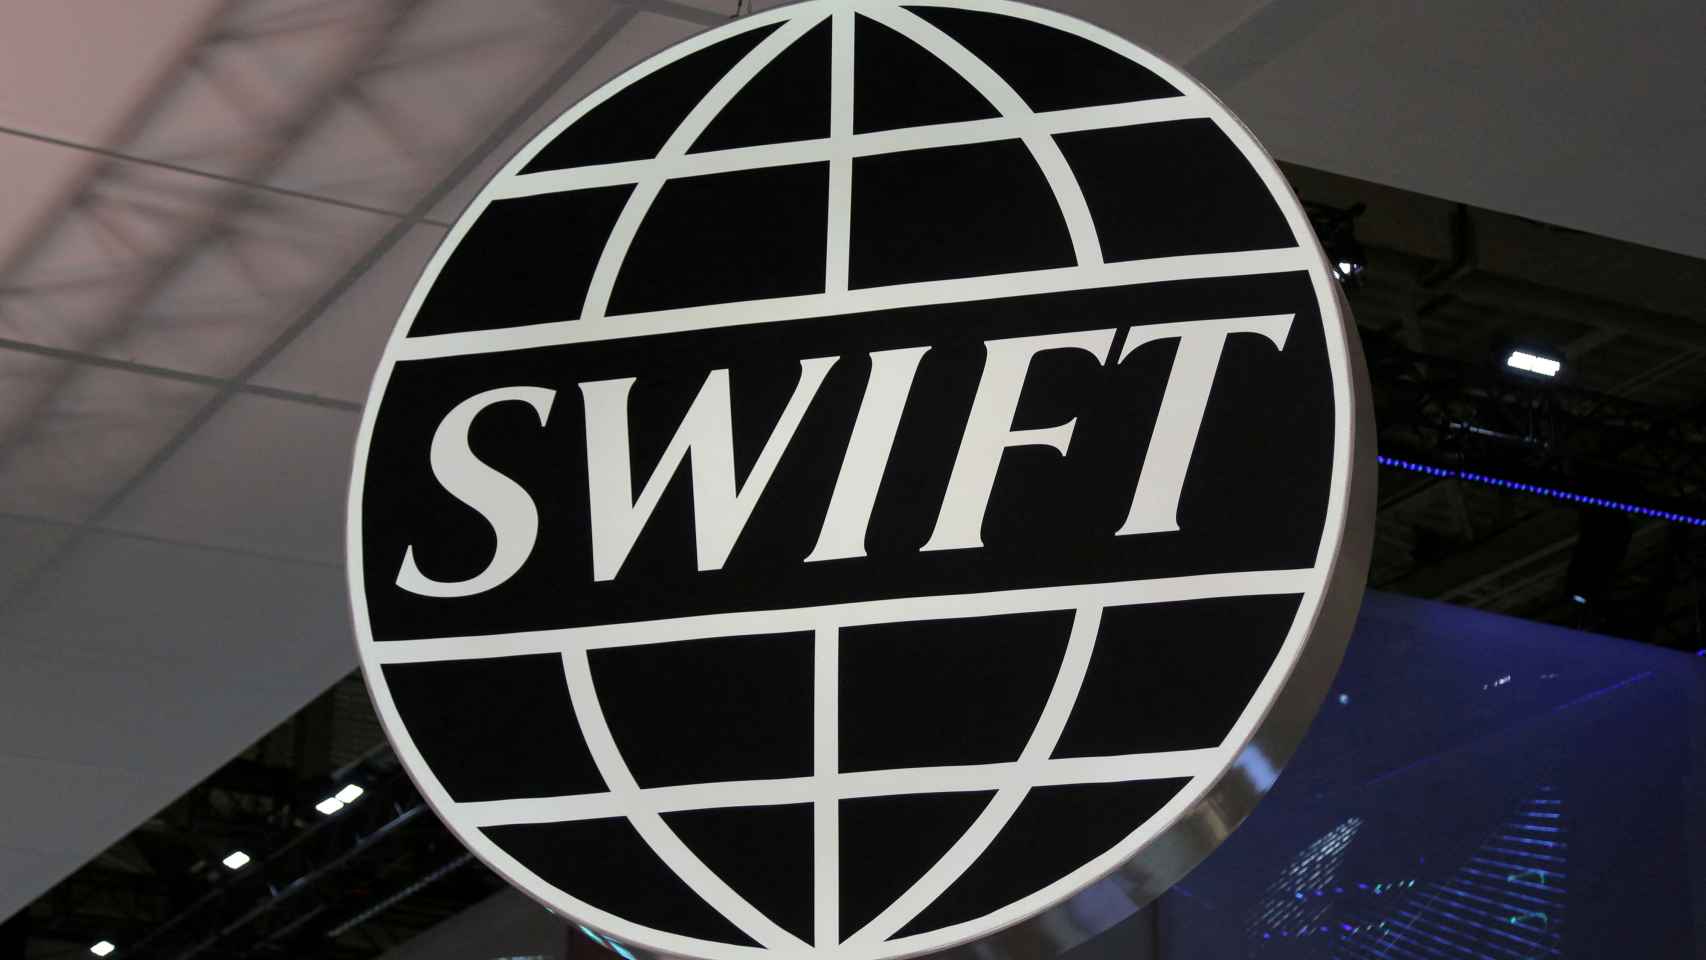 El logo del sistema internacional de pagos SWIFT